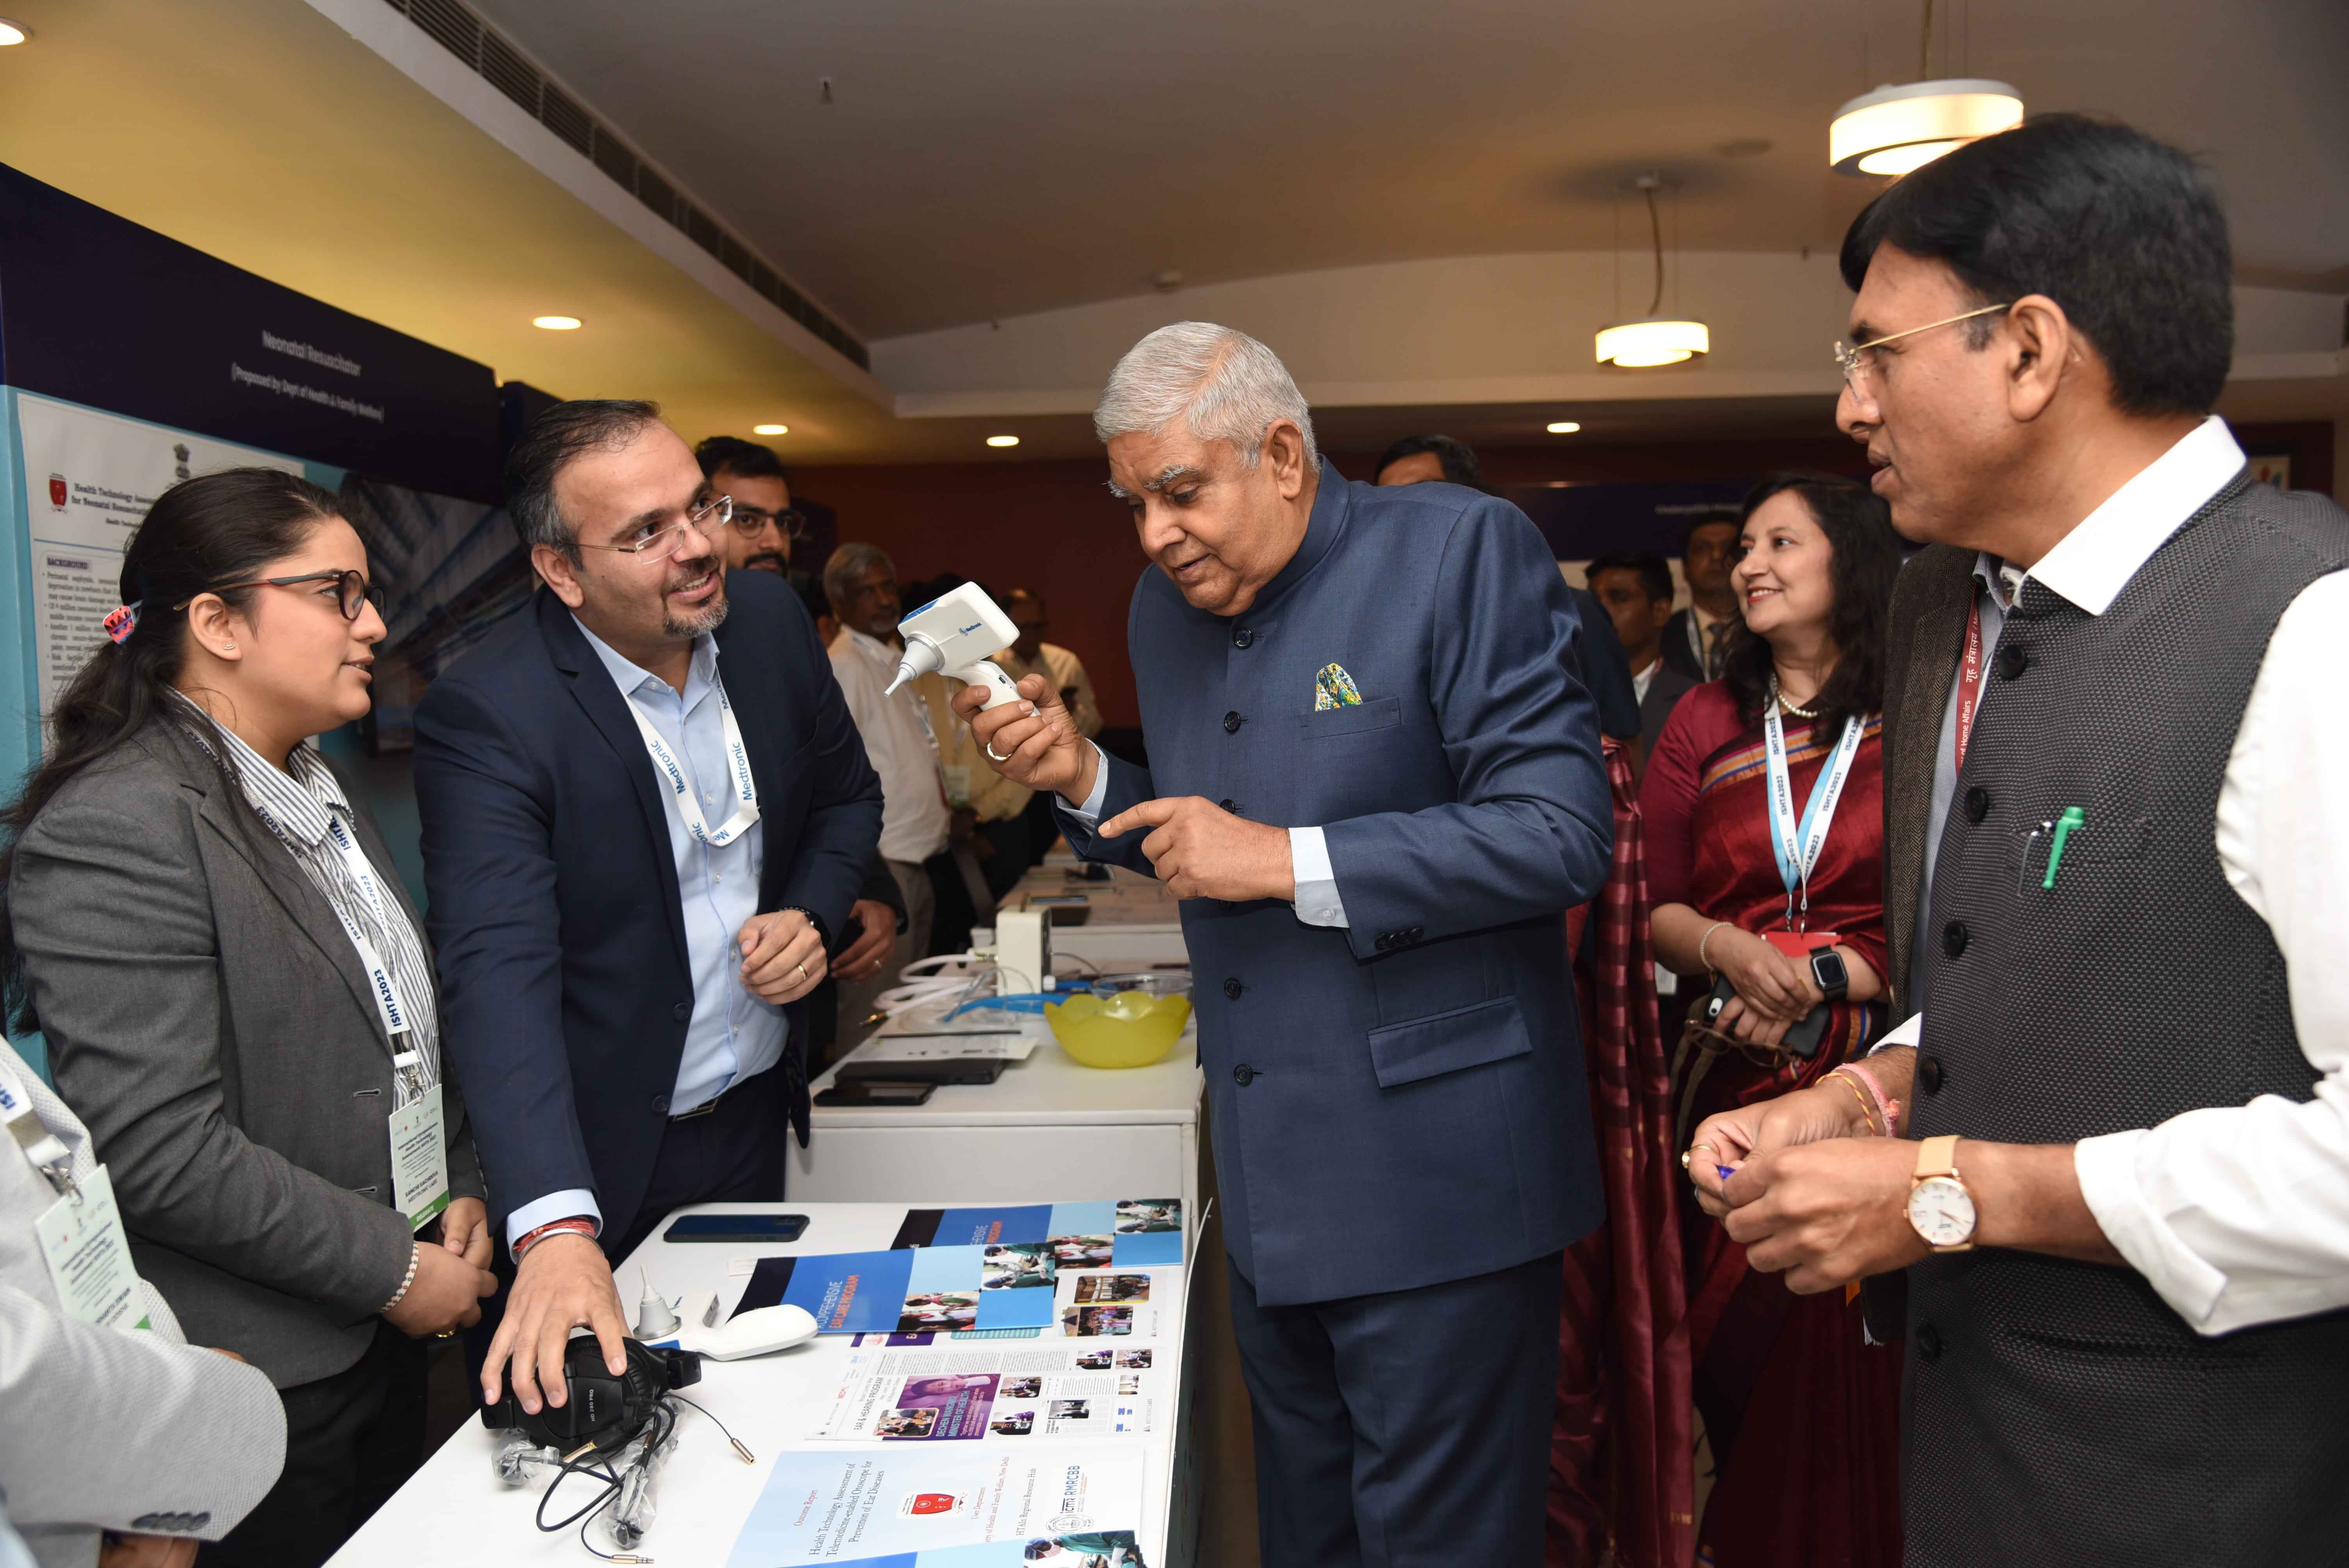 10 मार्च 2023 को नई दिल्ली में 'स्वास्थ्य प्रौद्योगिकी मूल्यांकन 2023' पर आयोजित अंतरराष्ट्रीय संगोष्ठी में केन्द्रीय मंत्री डॉ. मनसुख मांडविया के साथ 'मार्केट प्लेस' का दौरा करते हुए माननीय उपराष्ट्रपति श्री जगदीप धनखड़ ।